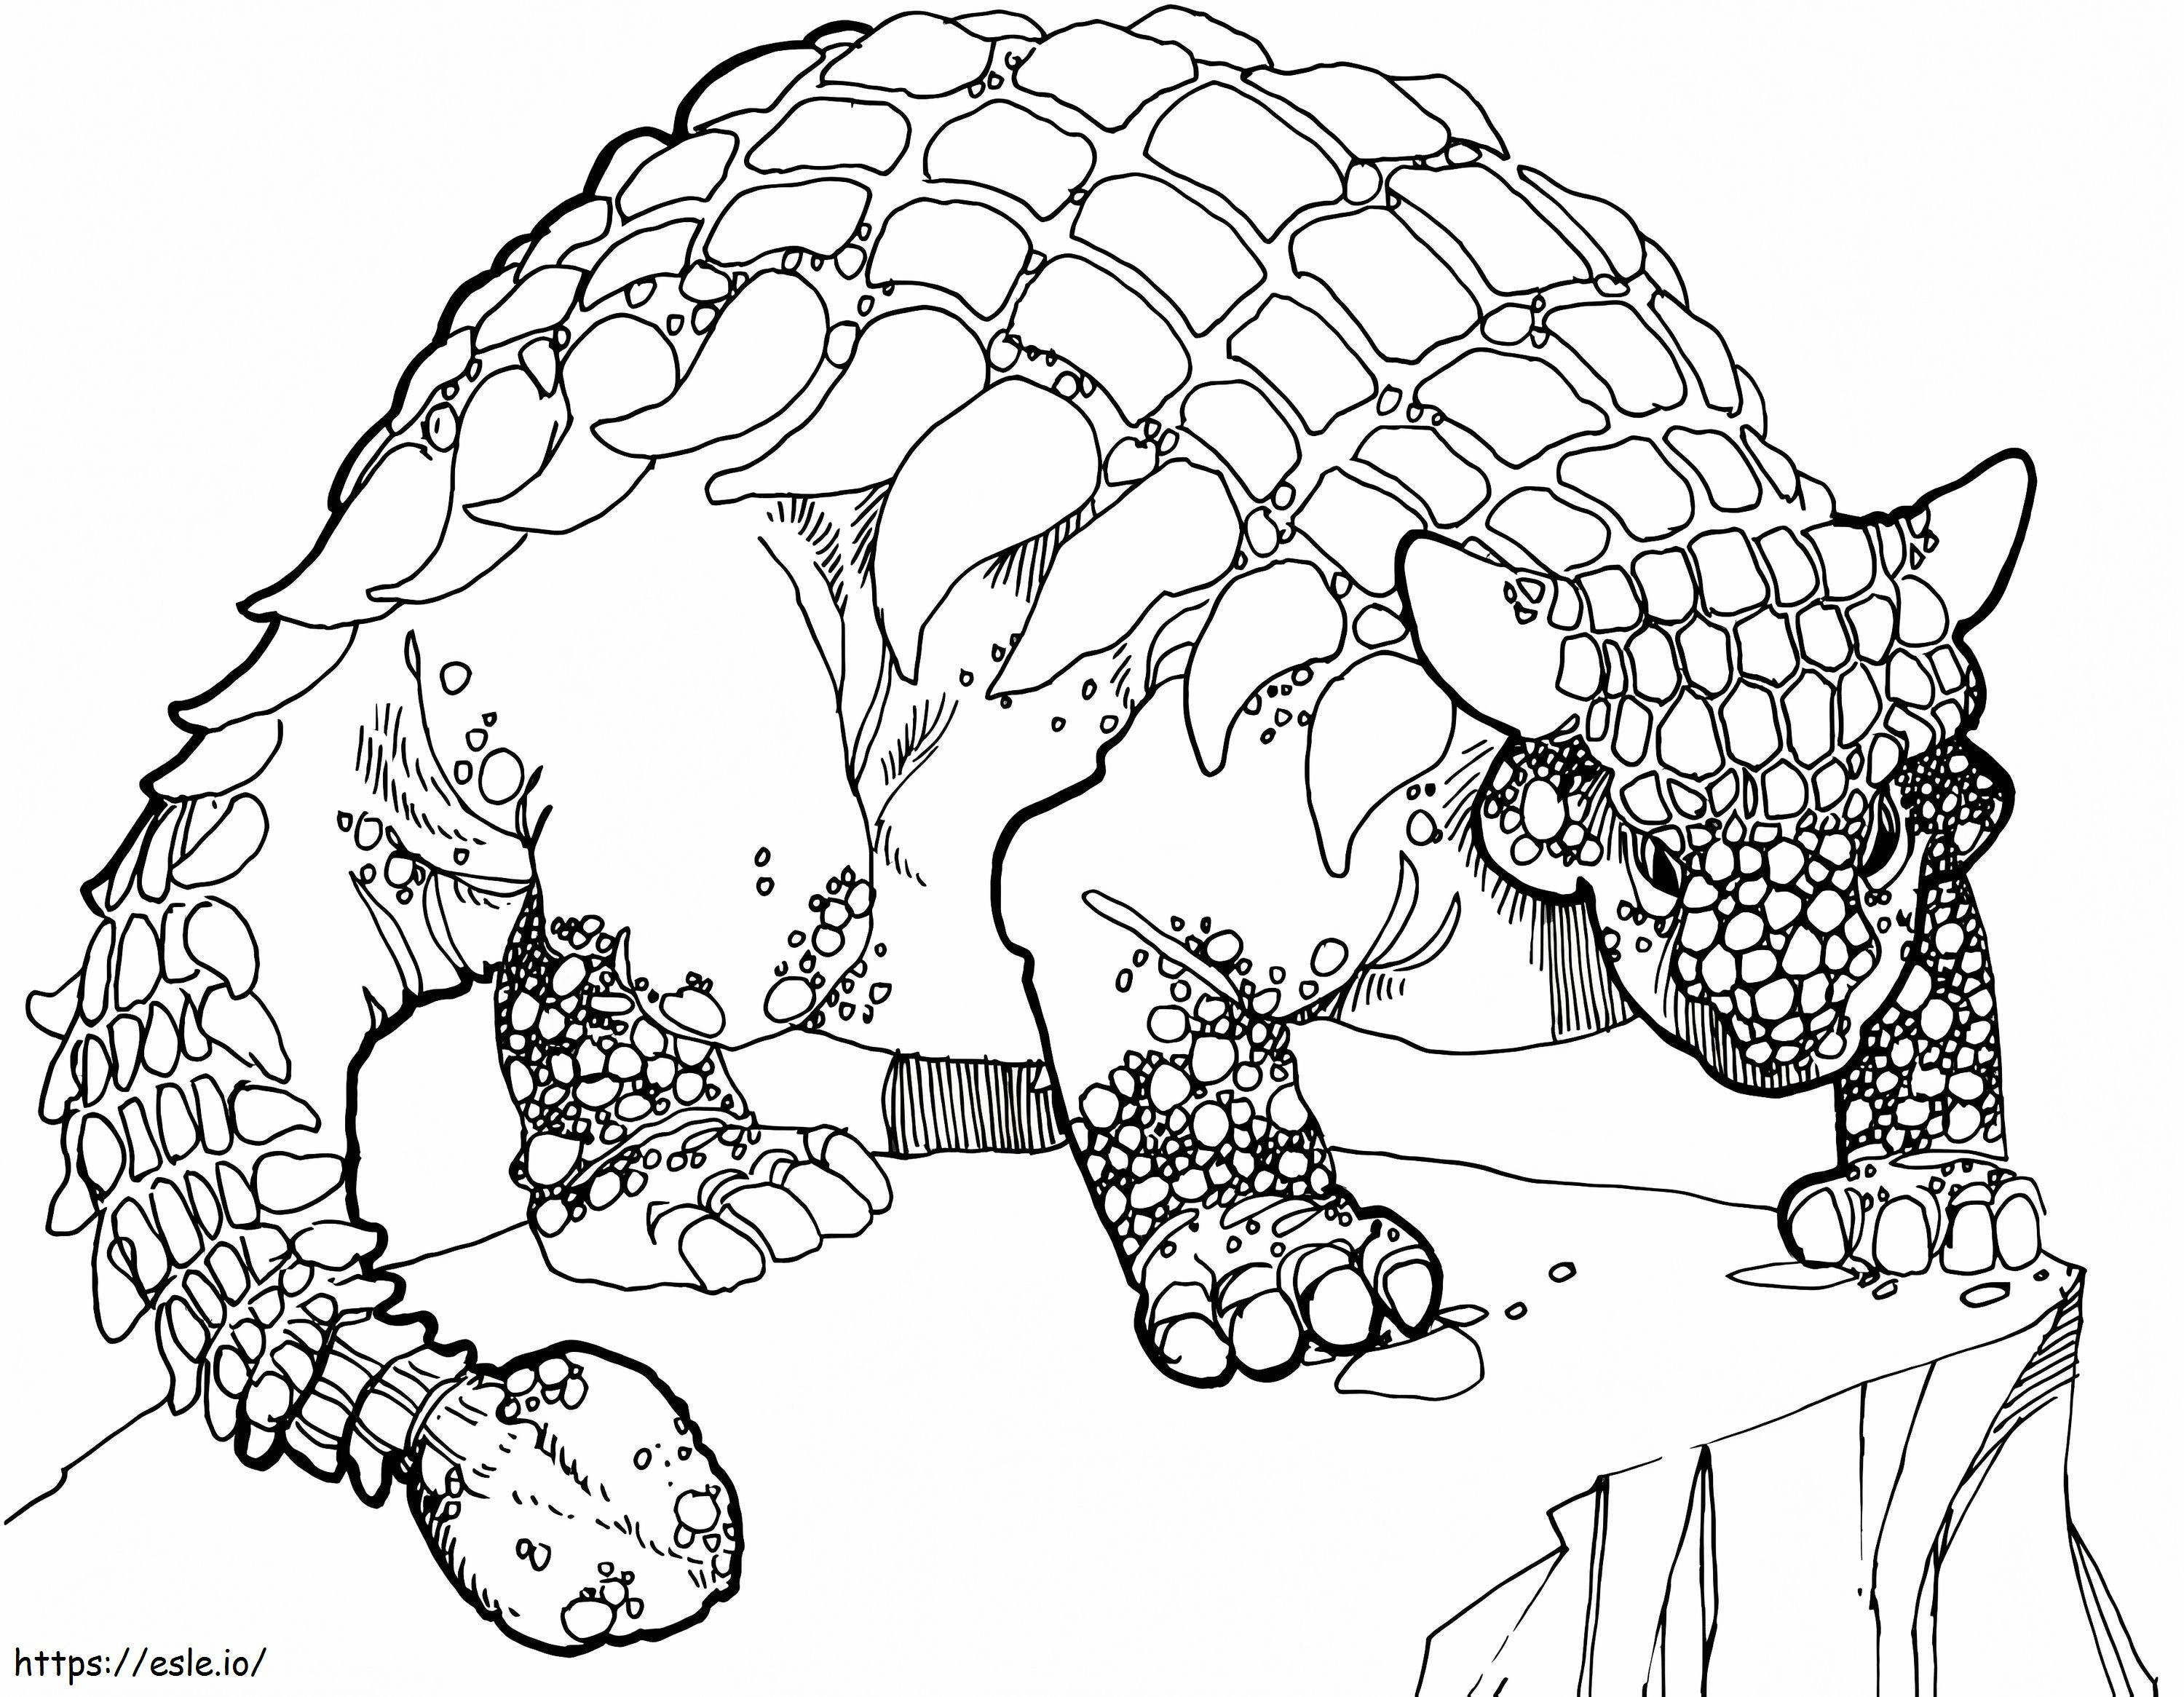 Ankylosaurus Dinosaur coloring page